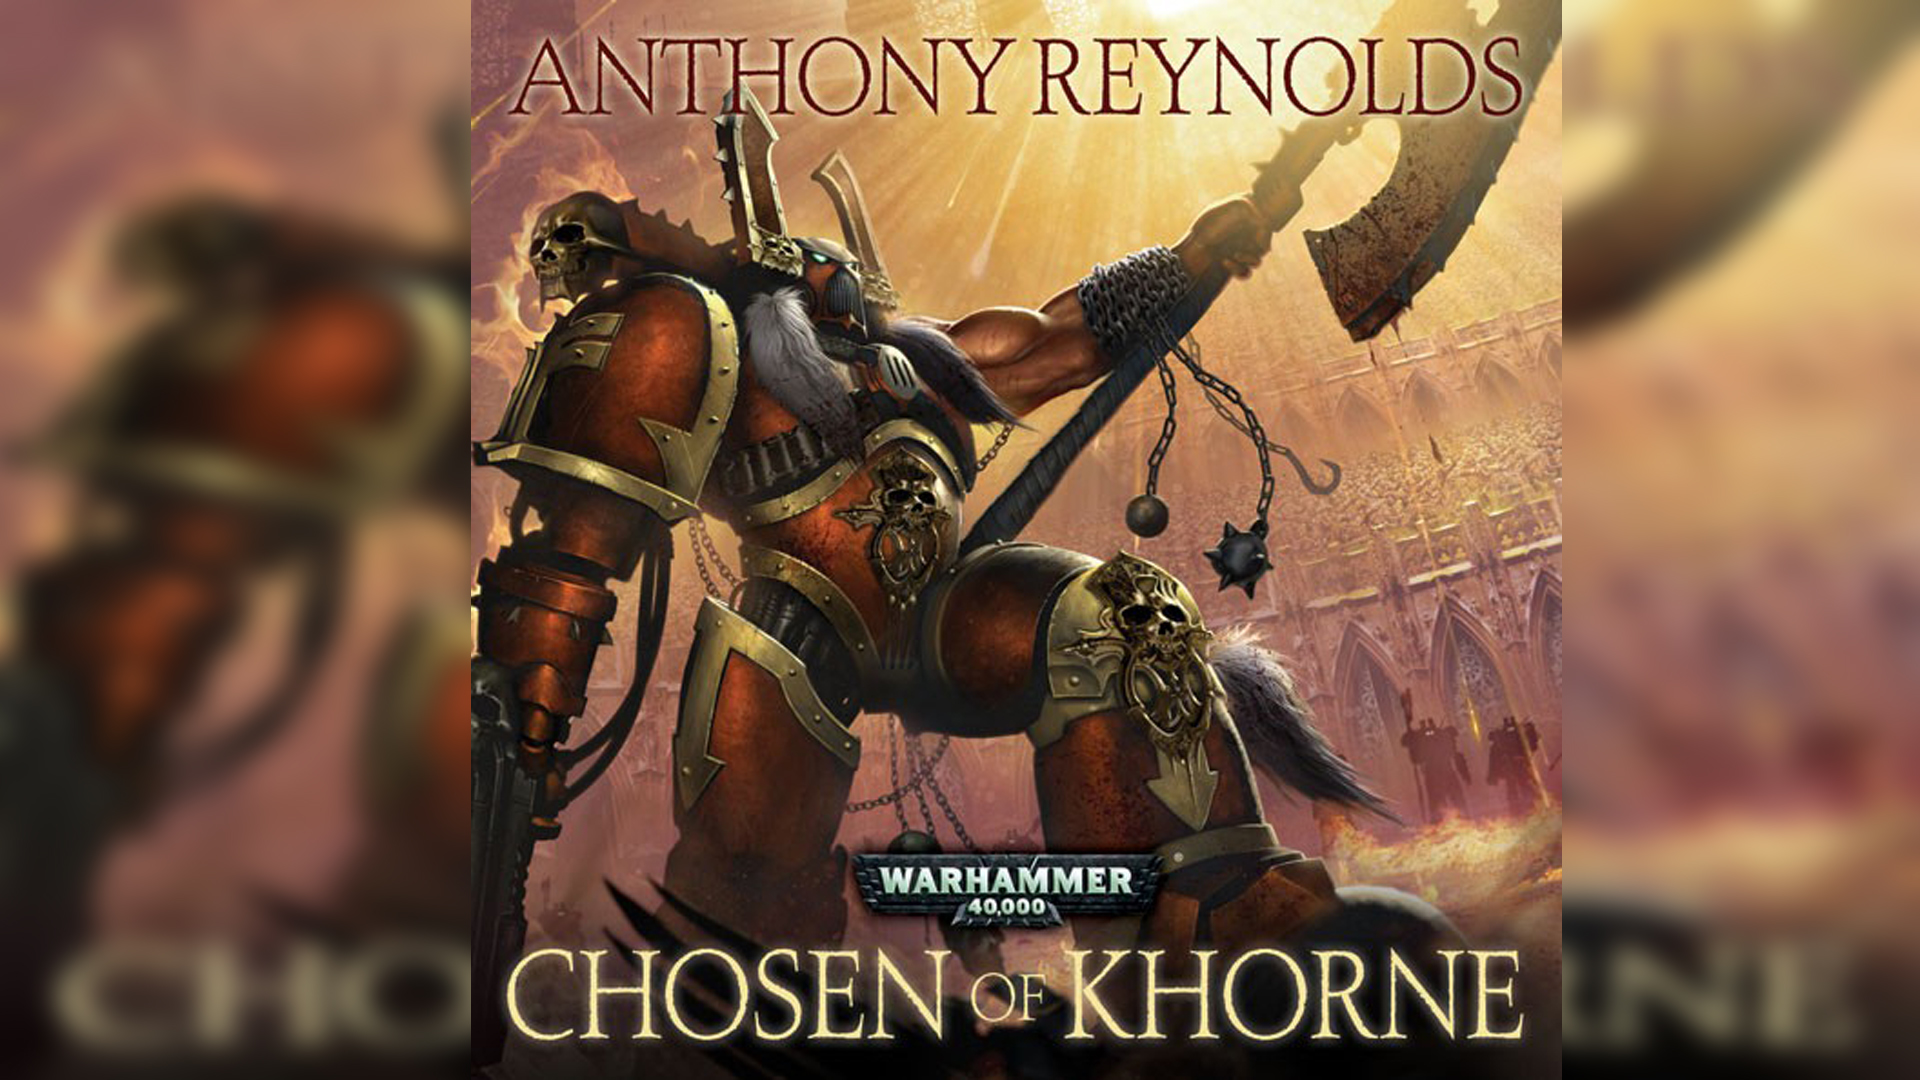 Избранный Кхорна - Энтони Рейнольдс / Anthony Reynolds - "Chosen of Khorne" (2012) by Vox Librarium